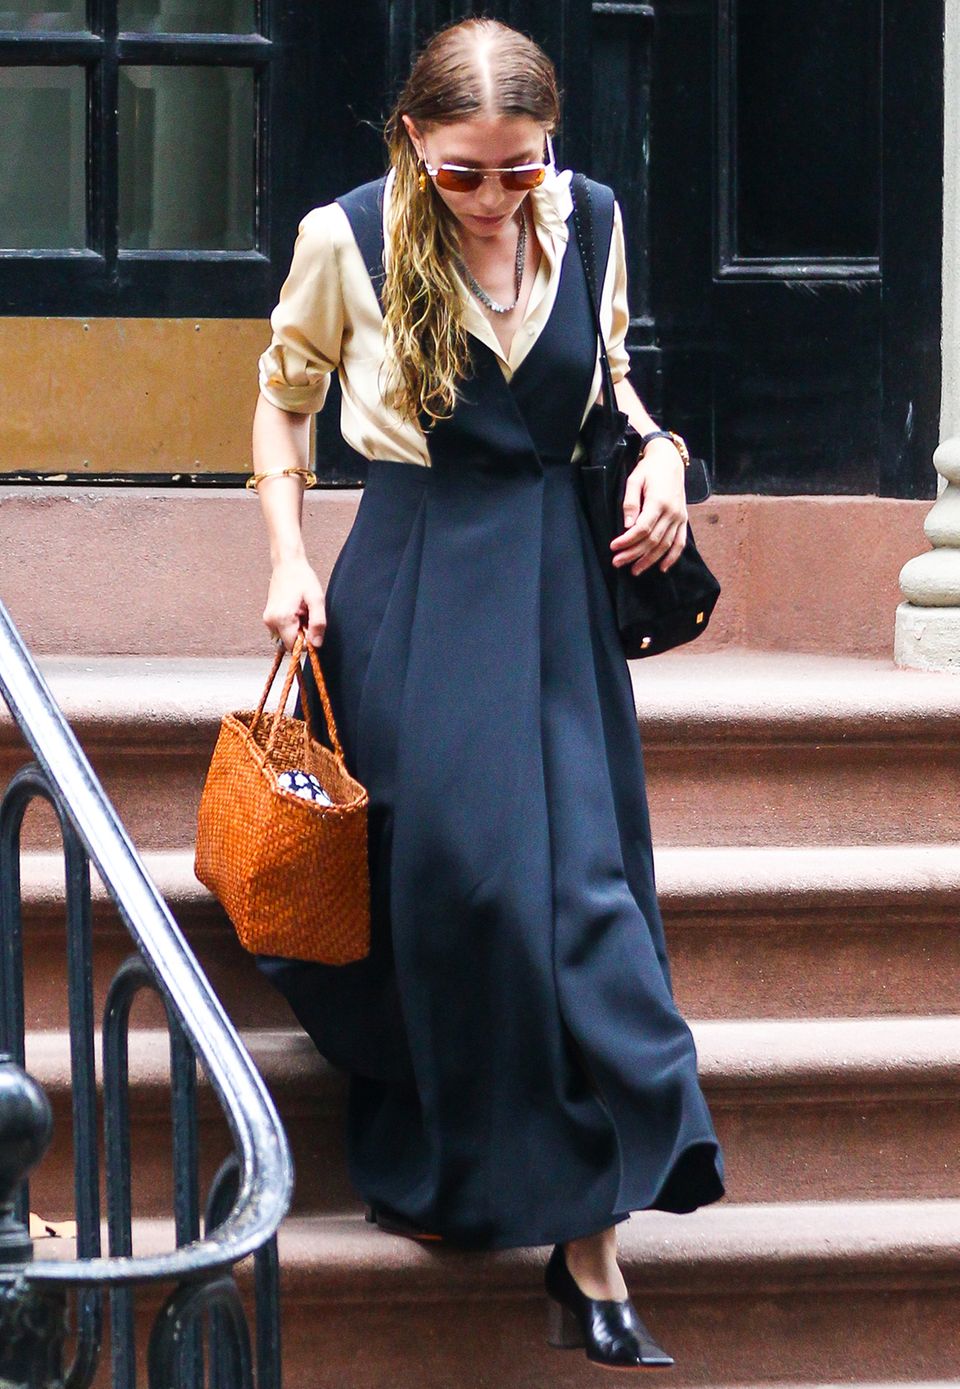 Nicht nur das Kleid von Ashley Olsen scheint aus einer anderen Zeit zu stammen, auch ihre letzte Haarwäsche scheint deutlich in der Vergangenheit zu liegen. Gebückte Haltung und Schlabber-Bluse lassen die ehemalige Style-Queen Ende 2015 zu Granny-Olsen werden.